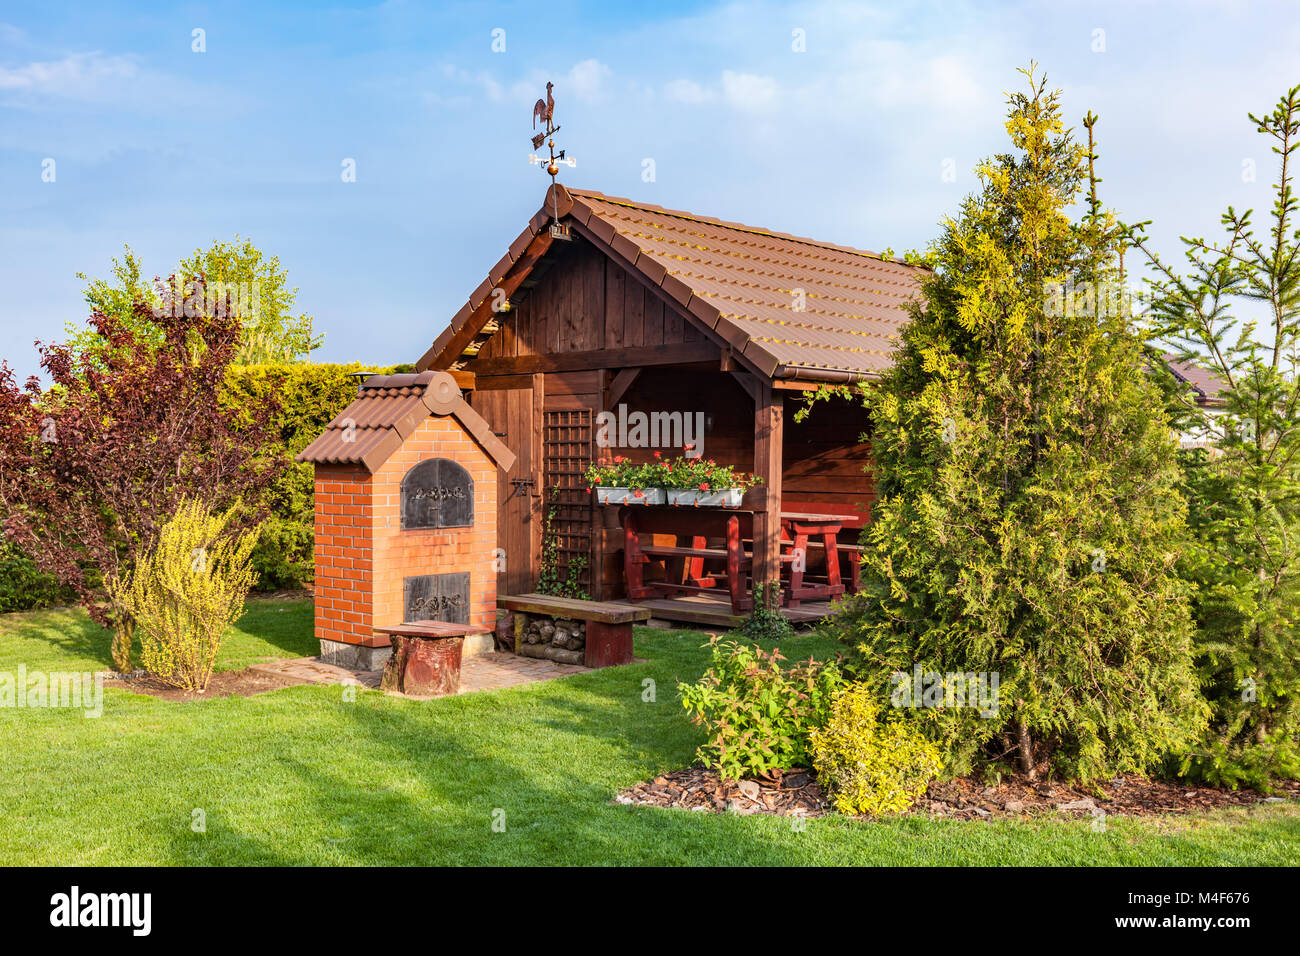 Angelegter Garten mit Grill und Holz Gartenhaus Stockfoto